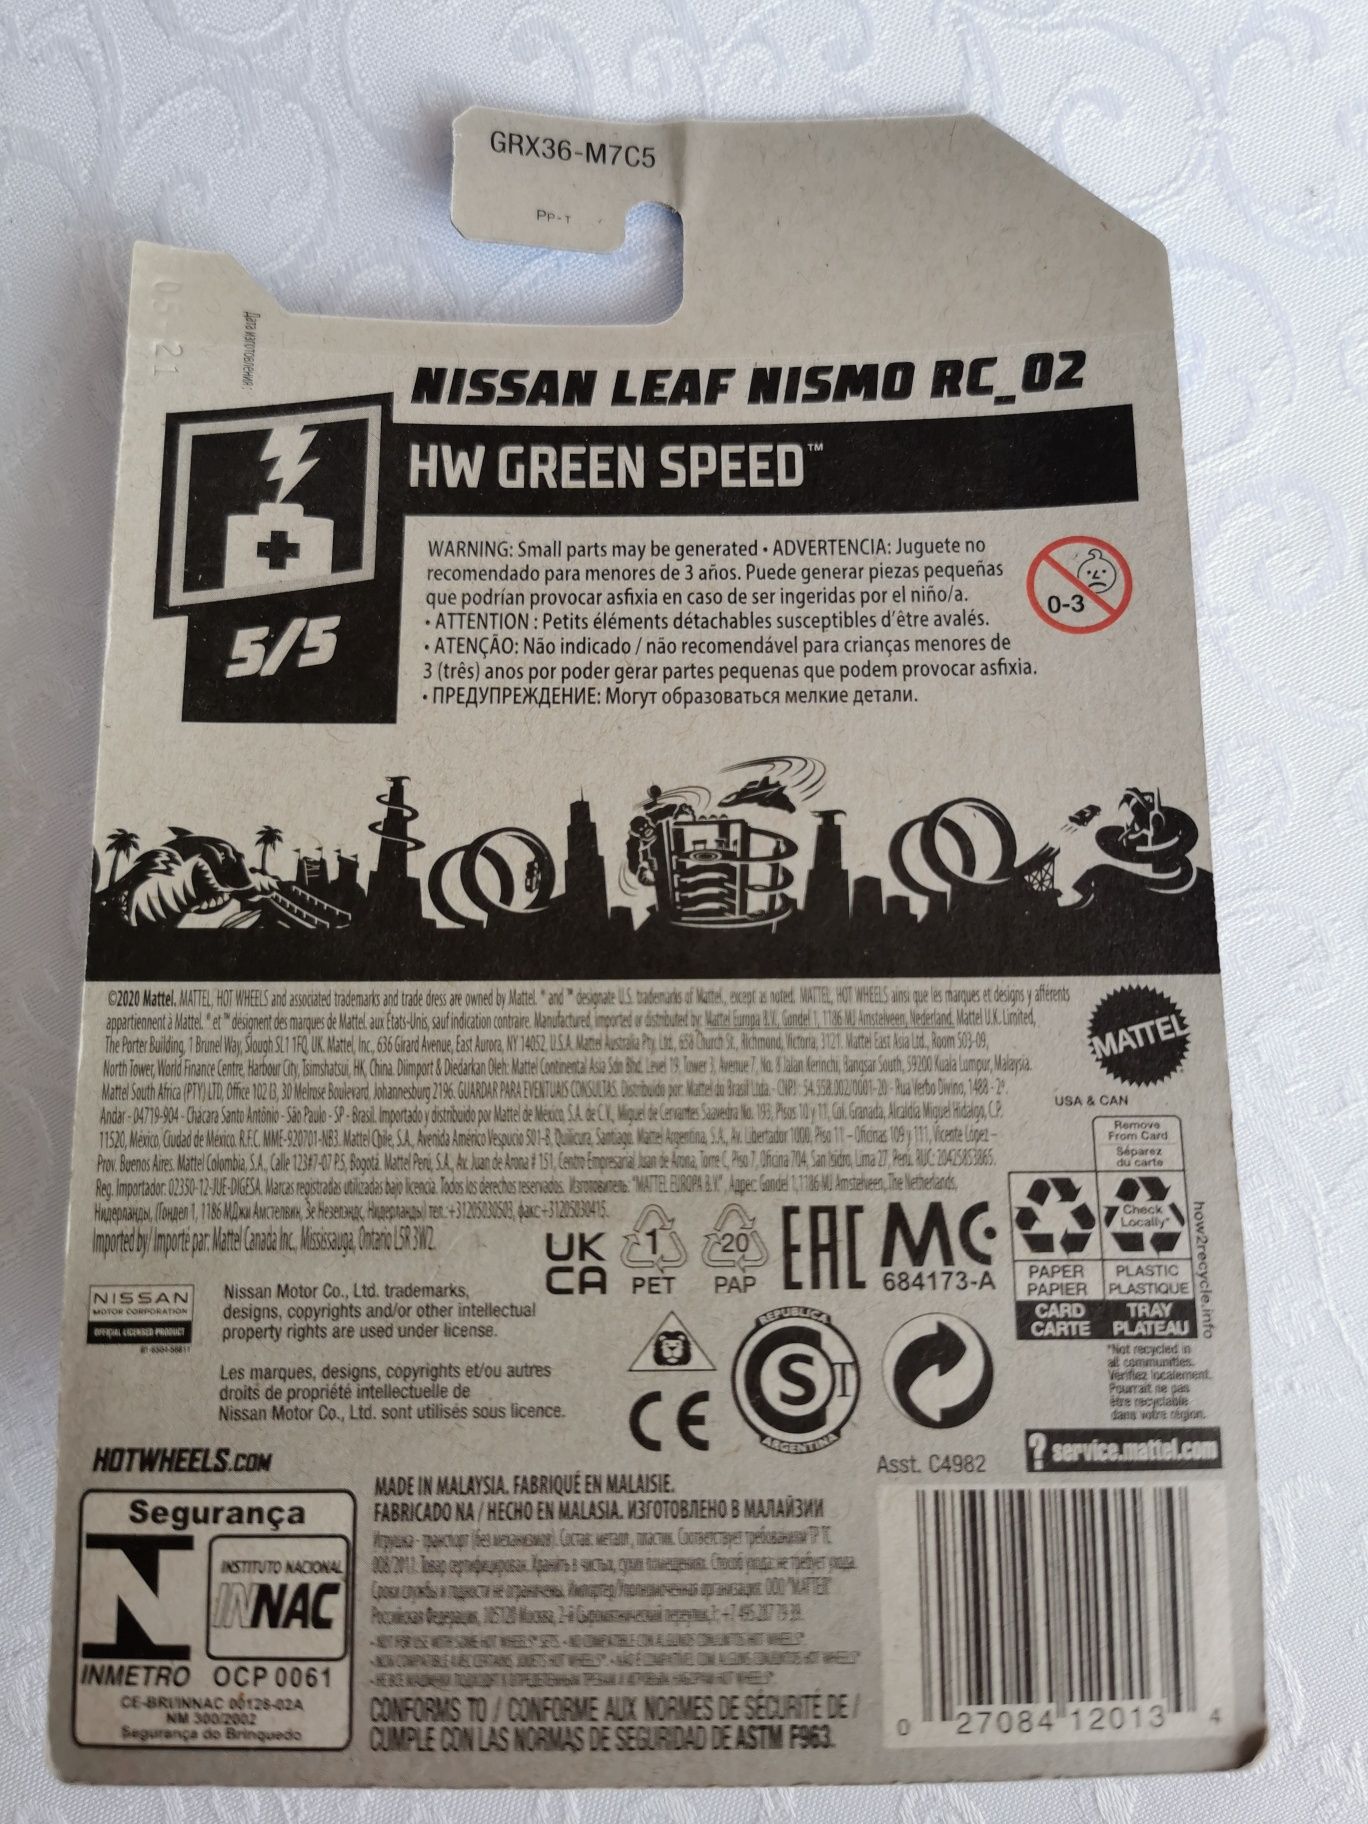 Hot Wheels Nissan Leaf Nismo RC_02 5/5 217/250